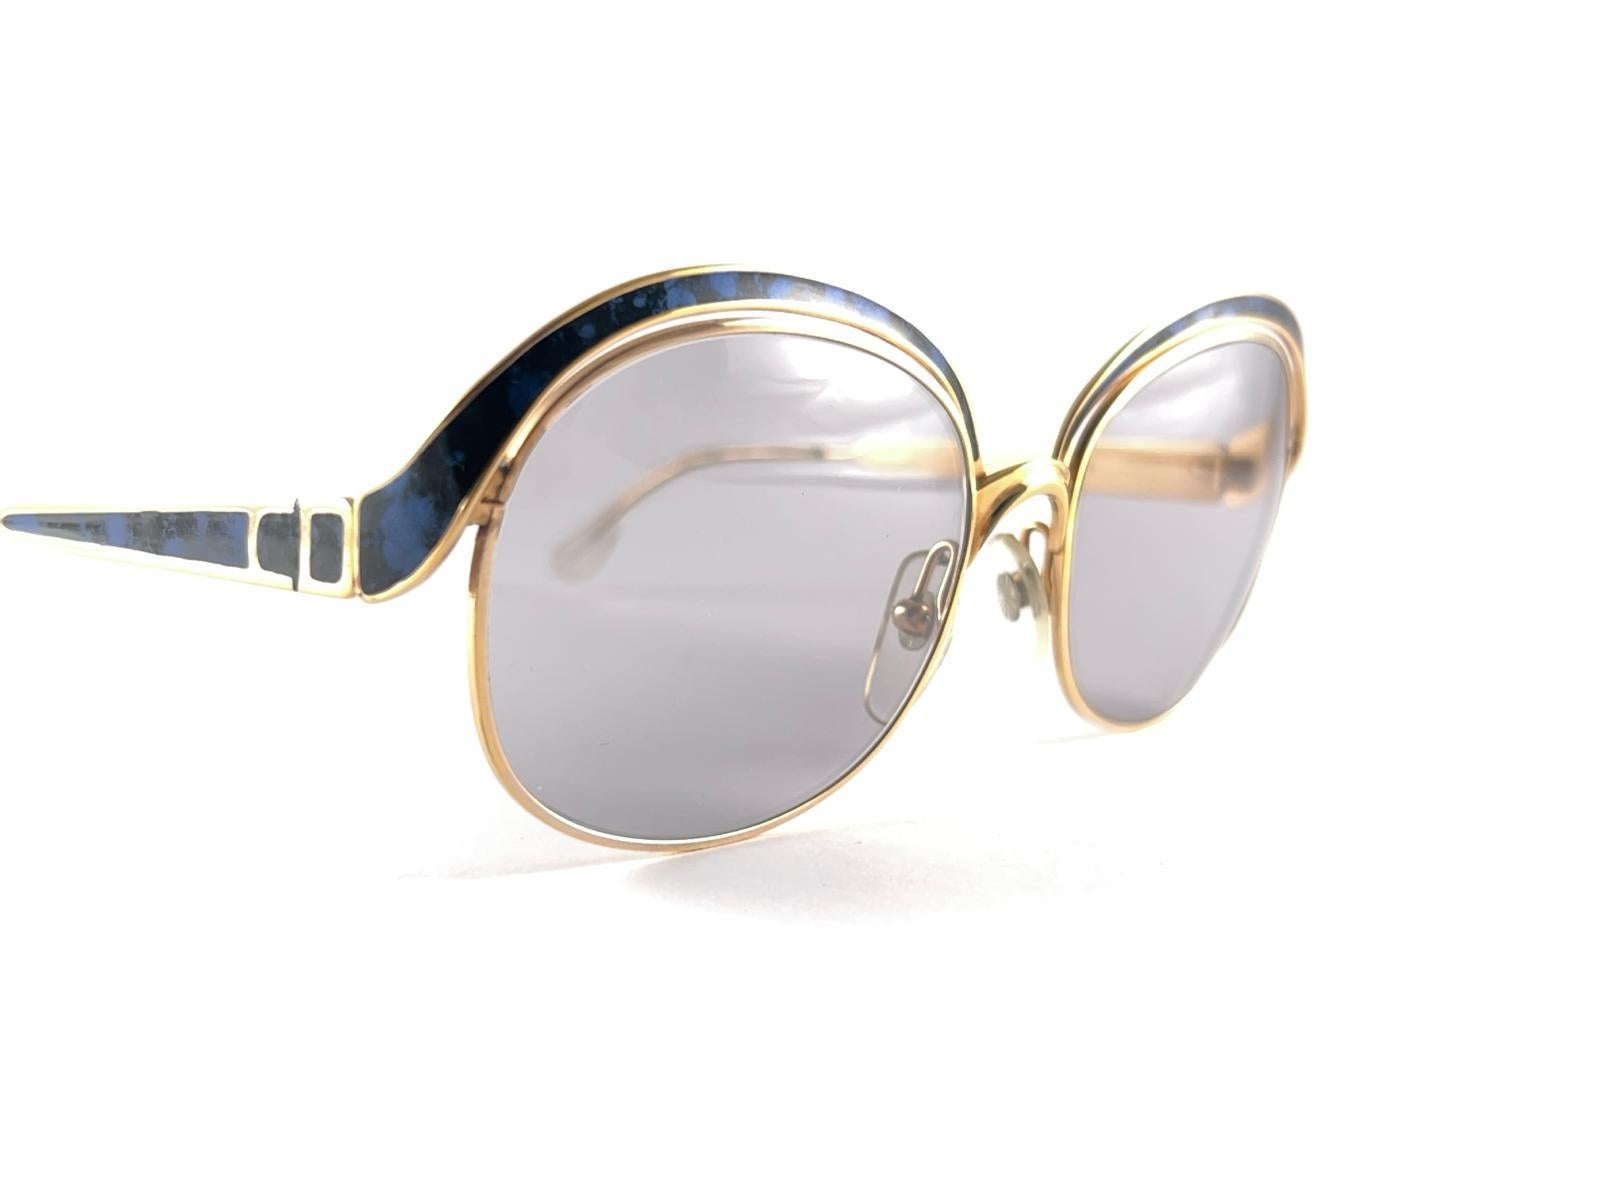 
Vintage Christian Dior Sonnenbrille. Emaille blau marmoriert Details über einen Goldrahmen.
Spotless Ligth Grey Linsen.
Dieses Element zeigen kleinere Zeichen der Abnutzung Bitte studieren Sie die Bilder vor dem Kauf


Hergestellt in